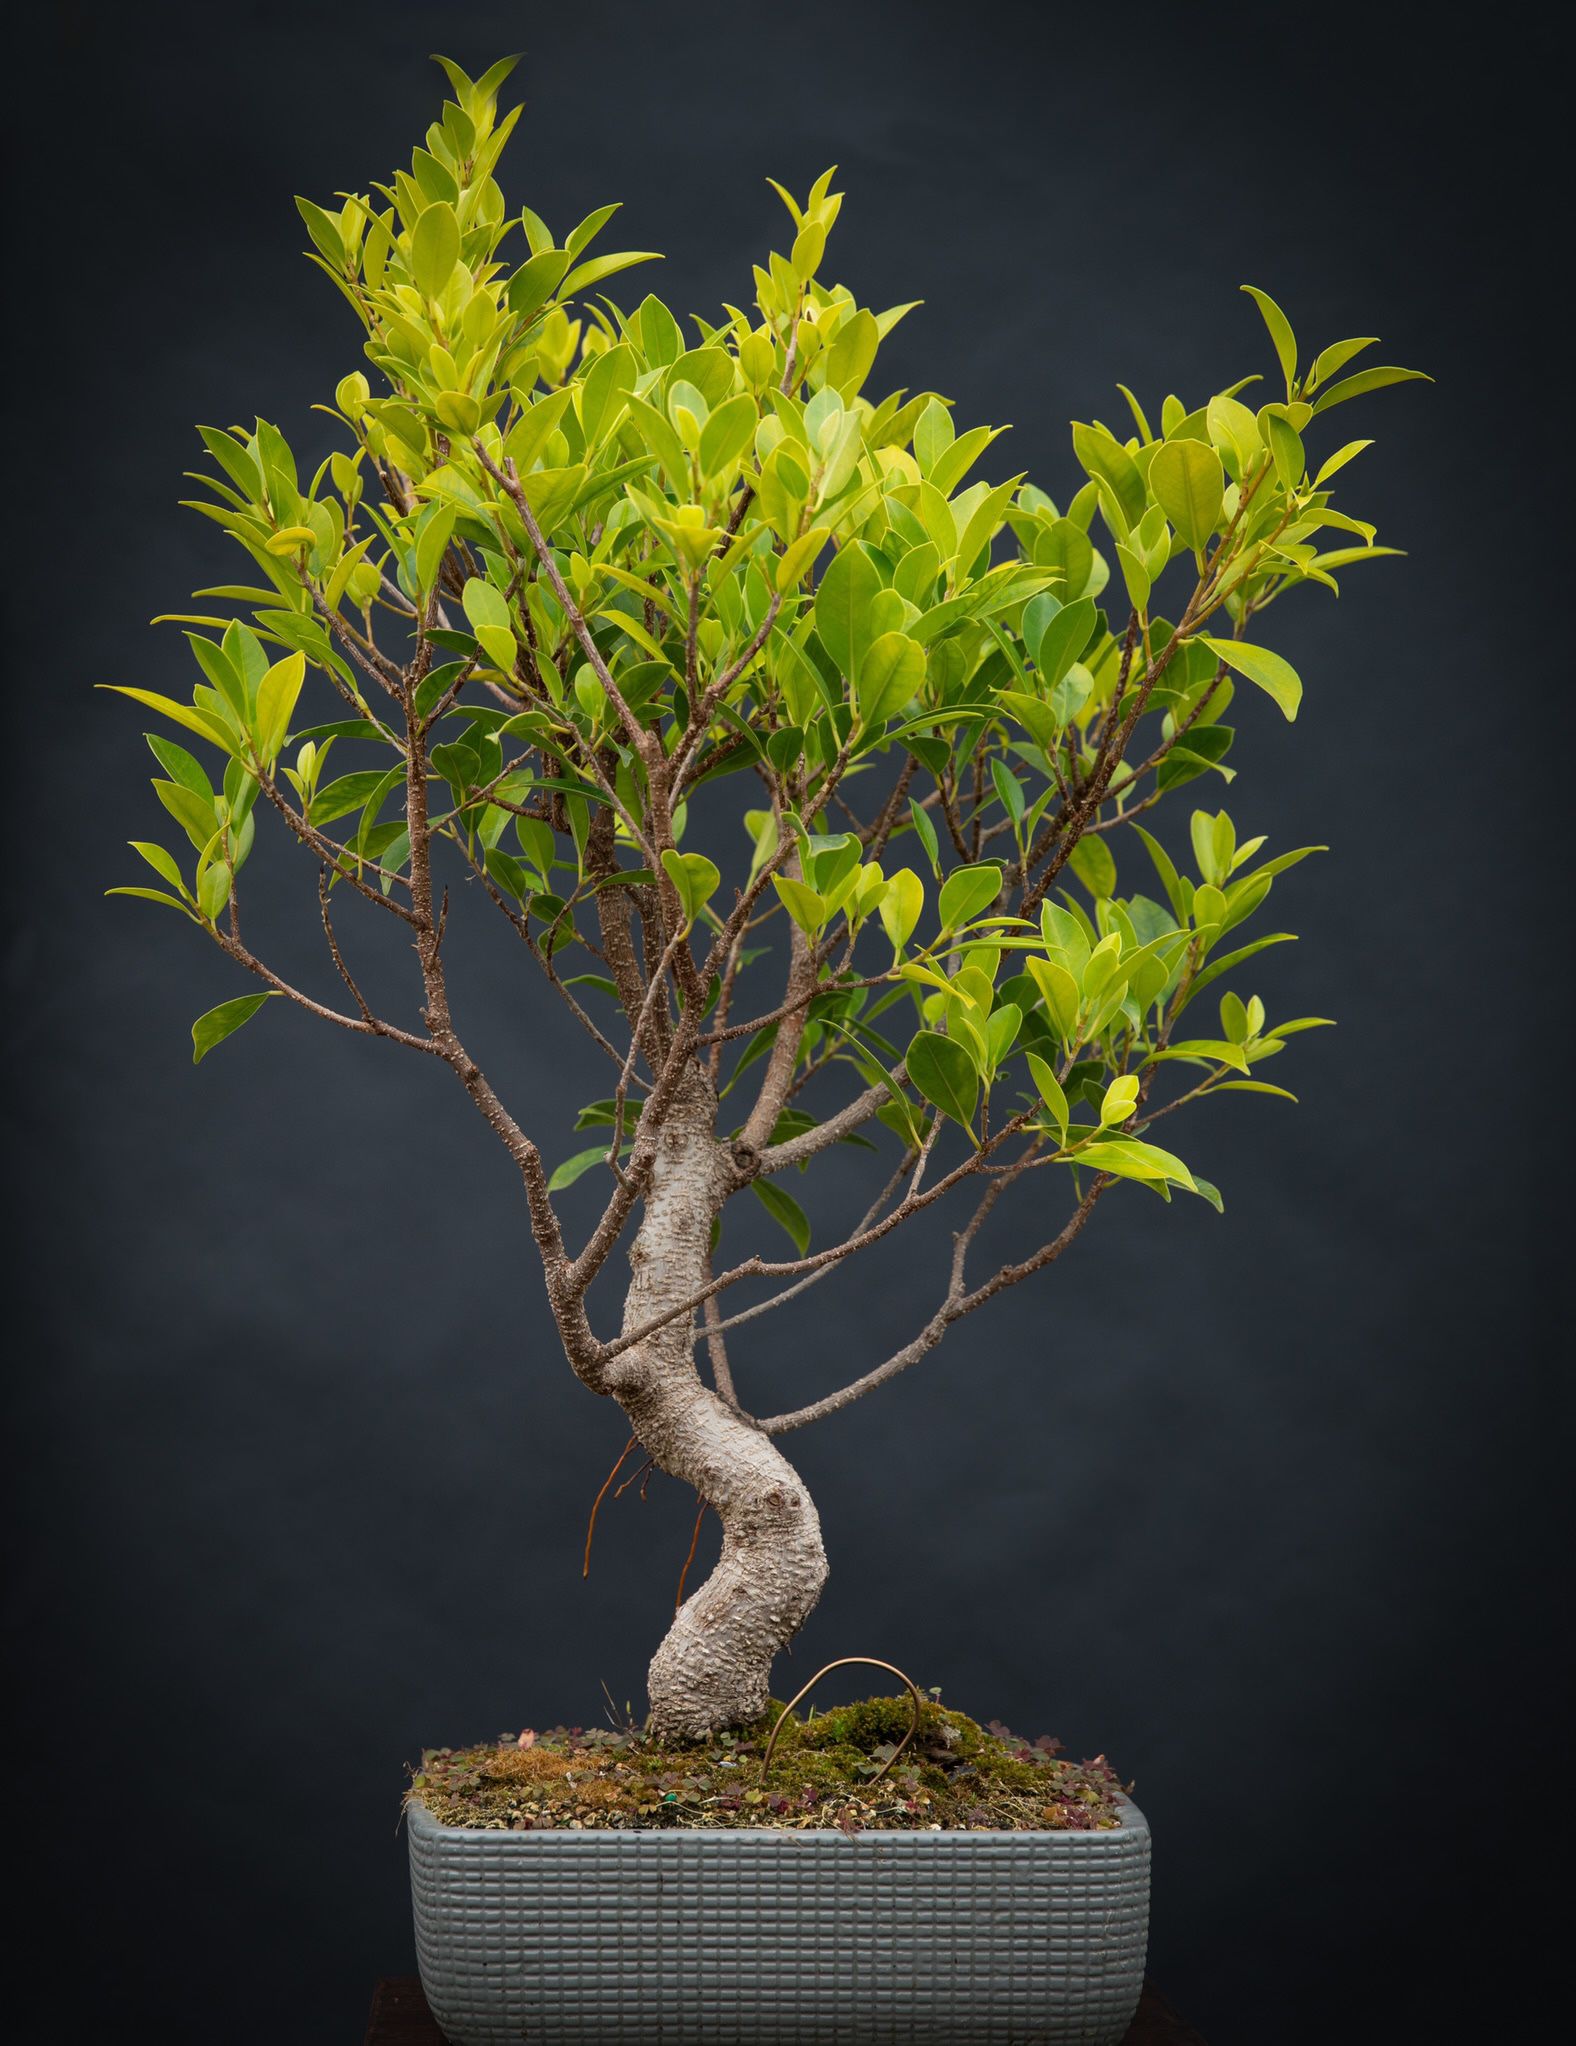 Ficus Bonsai  (Indoor) - 22” High In 10”x10” Ceramic Pot